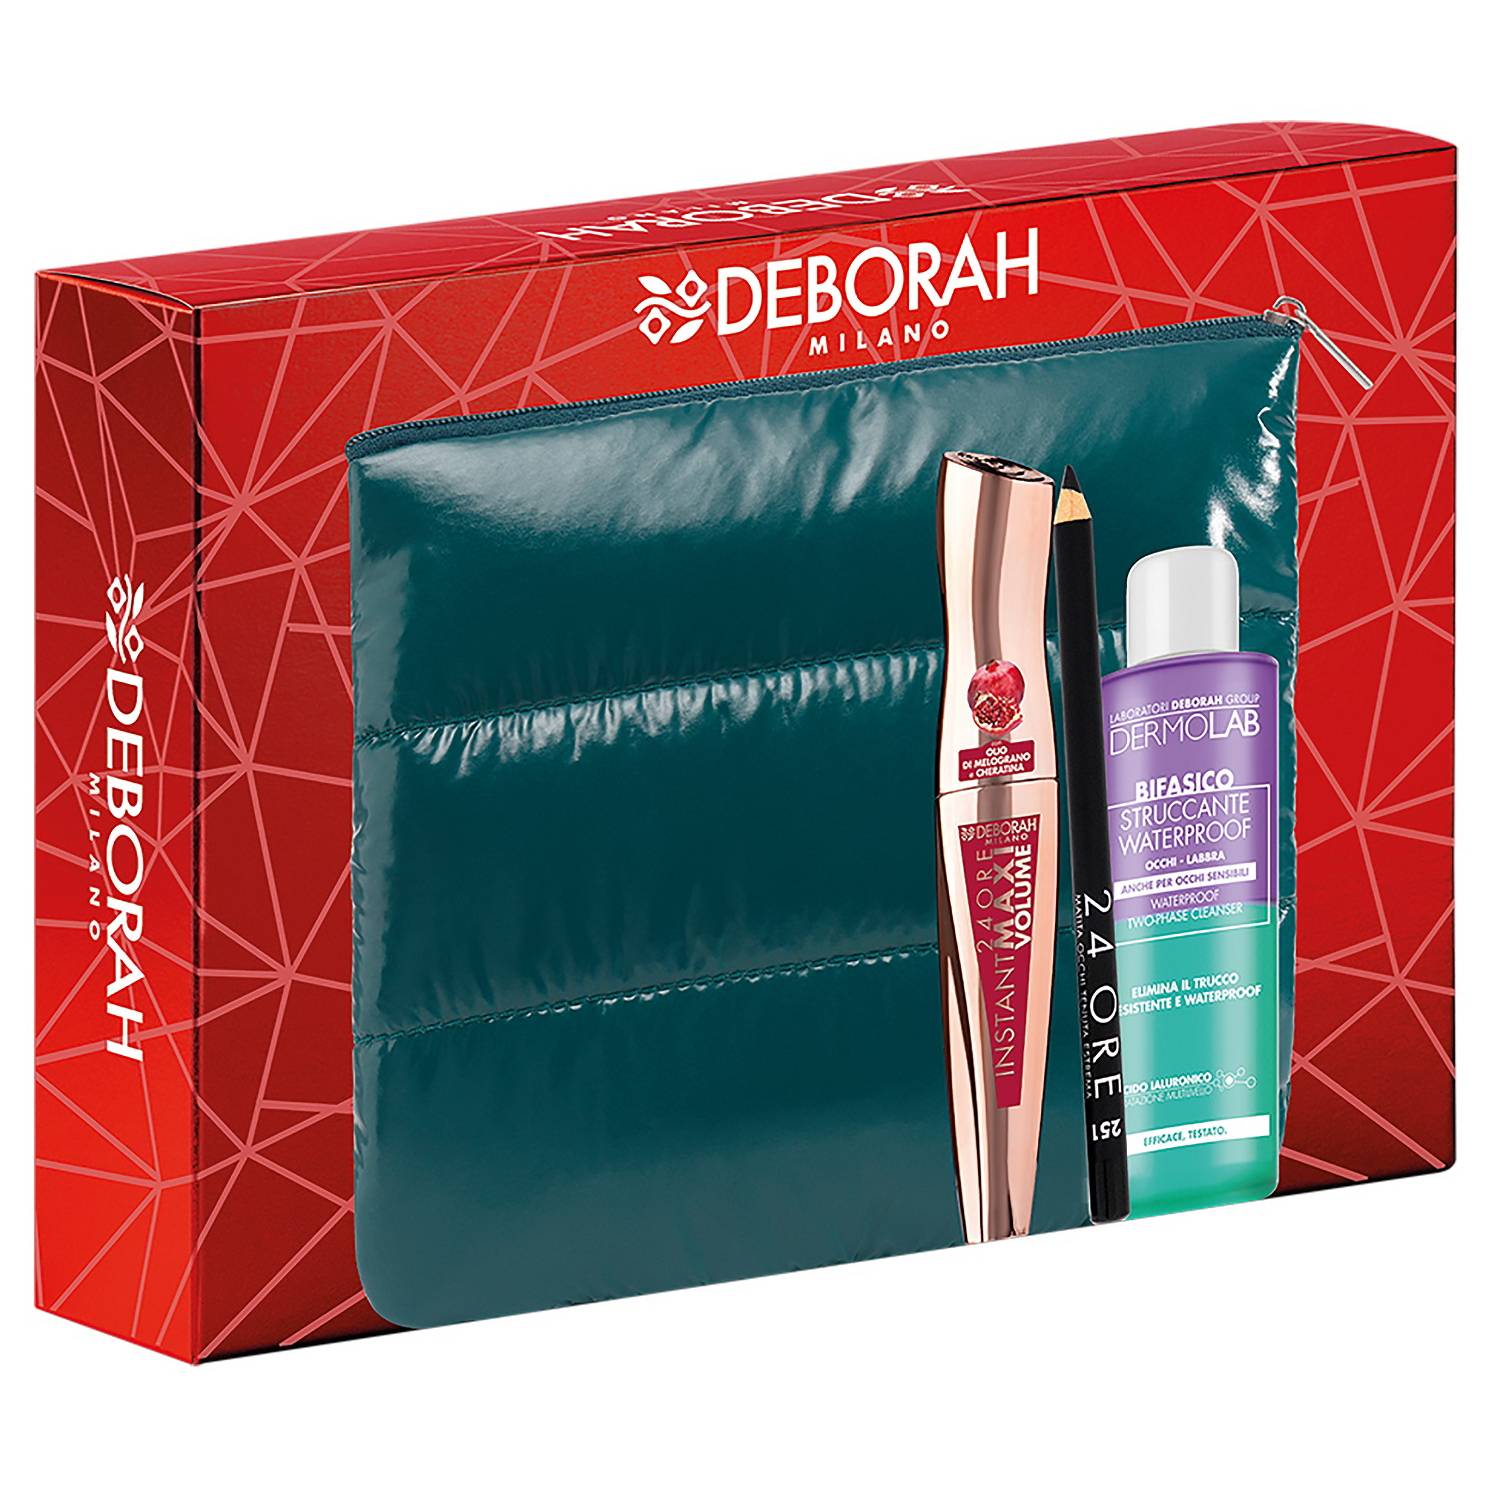 DEBORAH Подарочный набор № 1 в косметичке: тушь для ресниц Maxi Volume + карандаш для век + средство для снятия водостойкого макияжа (DEBORAH, Sets)